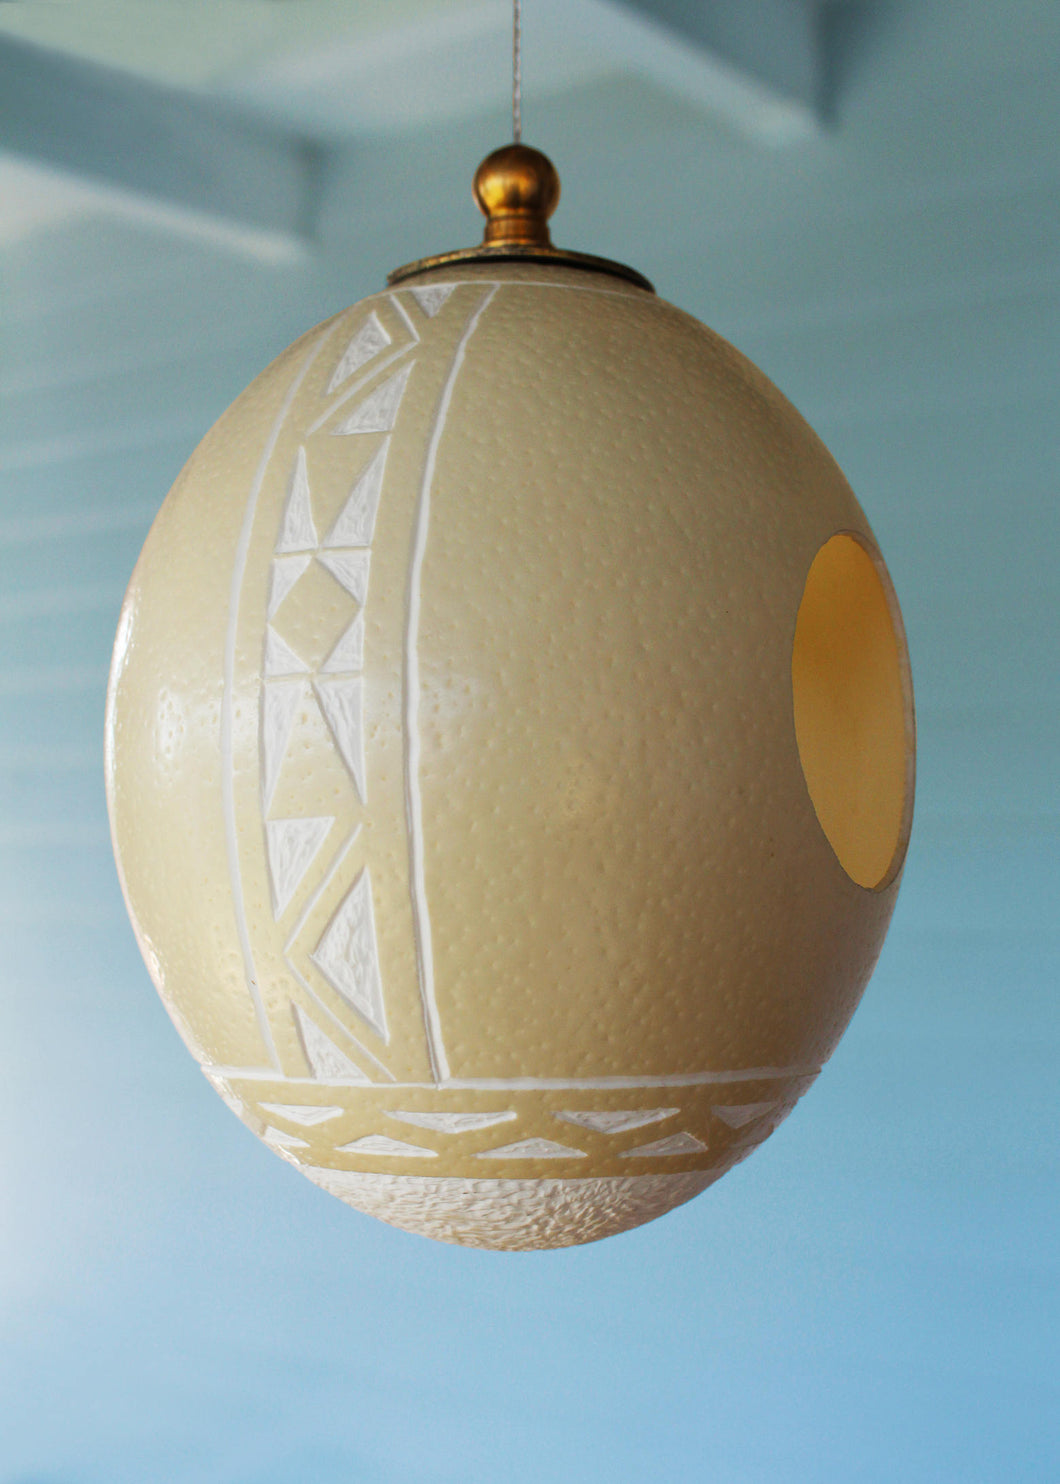 Ndbele handcrafted ostrich eggshell bird-feeder